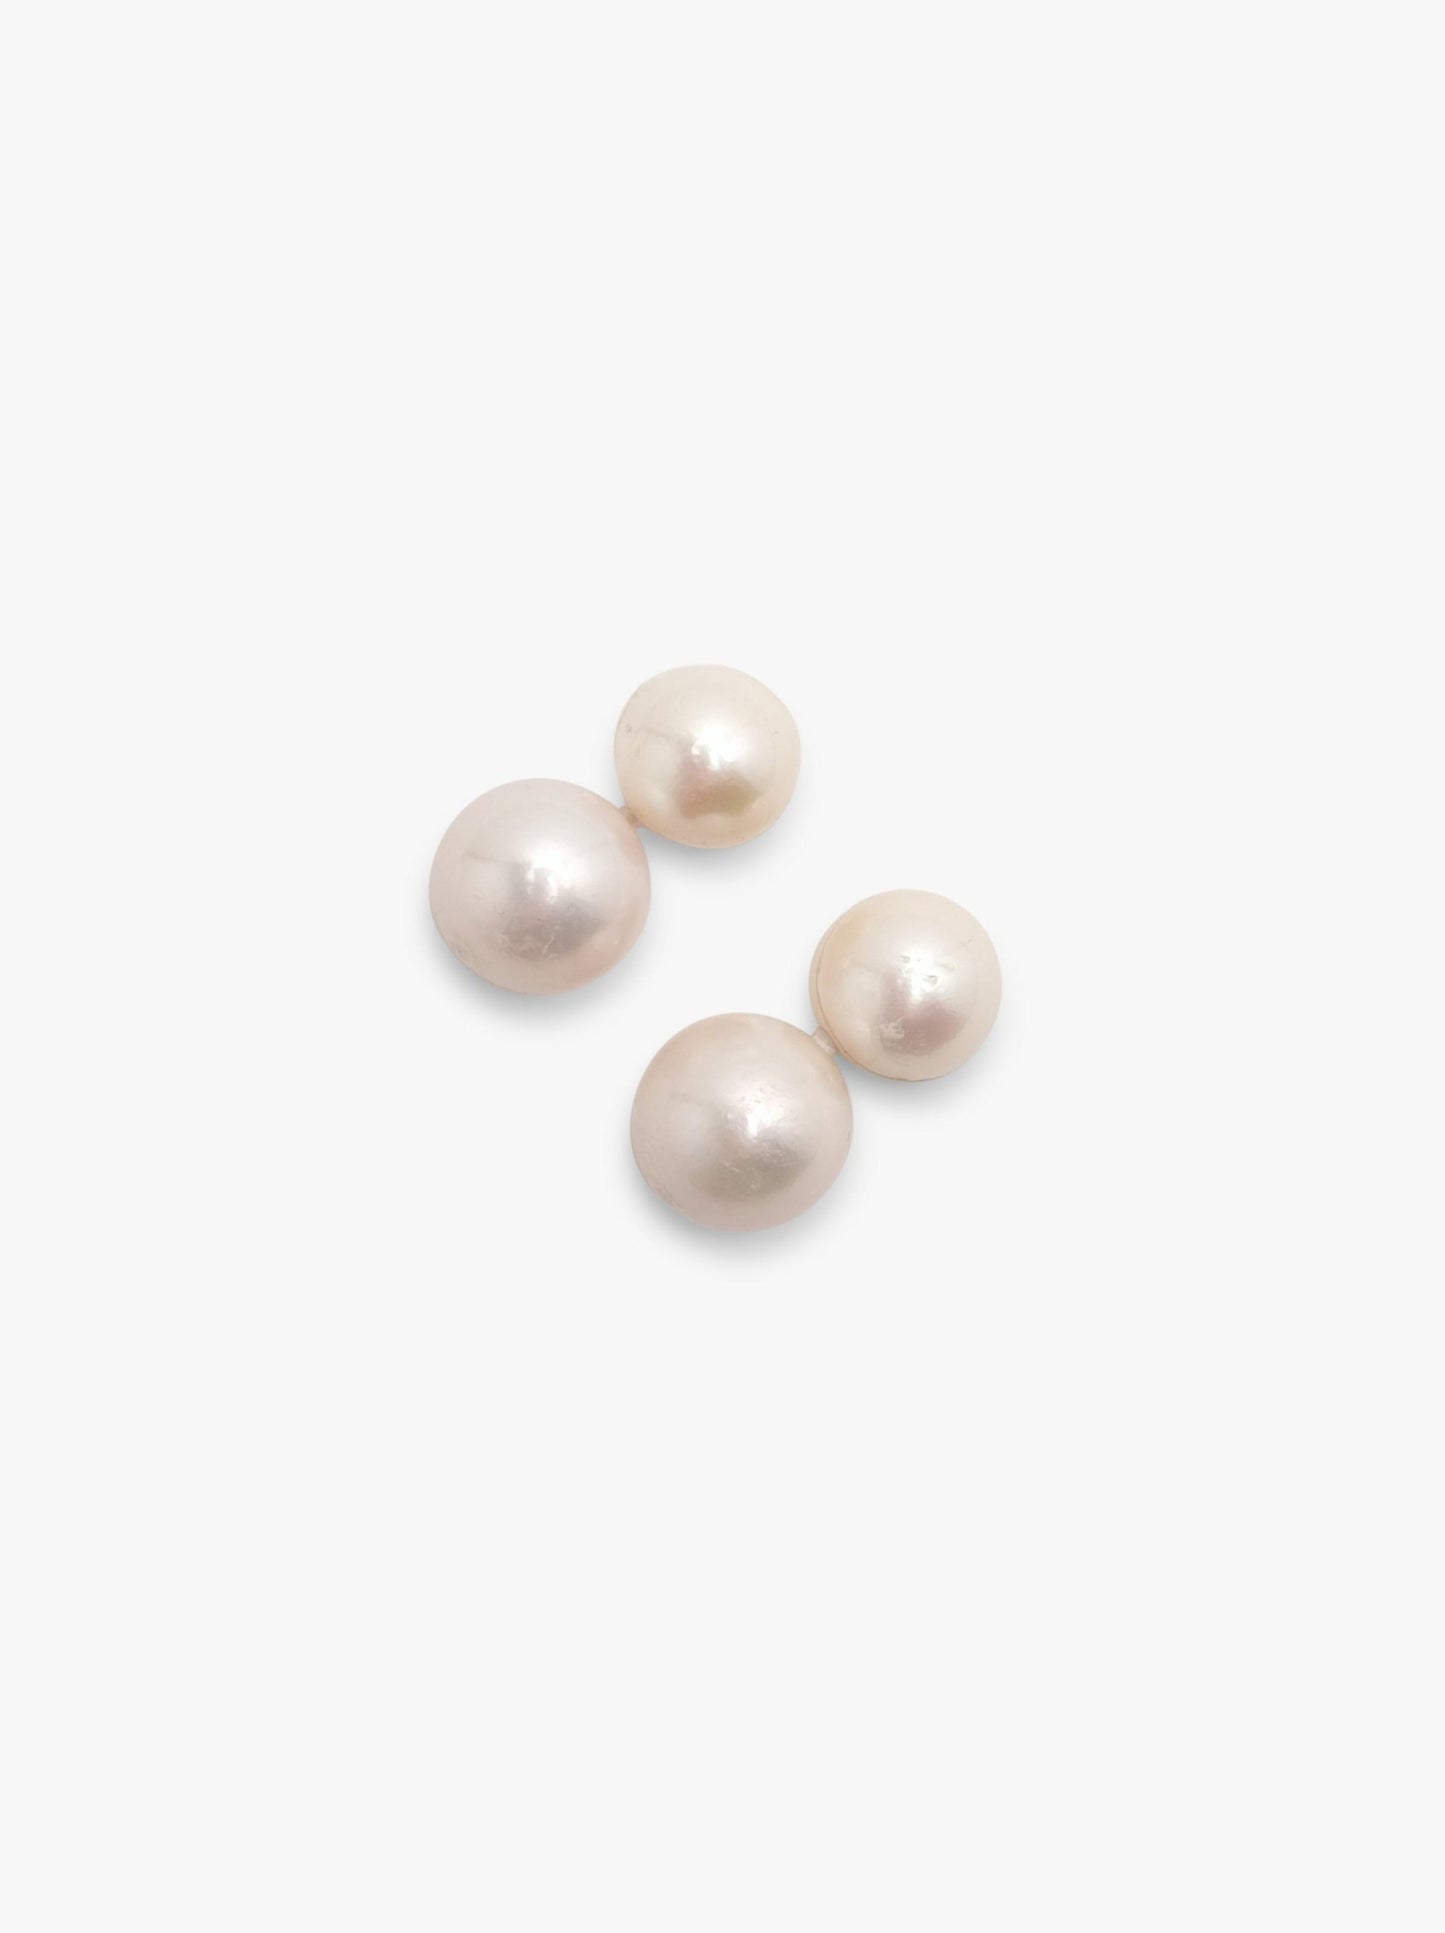 Stud earrings: pearls, horn